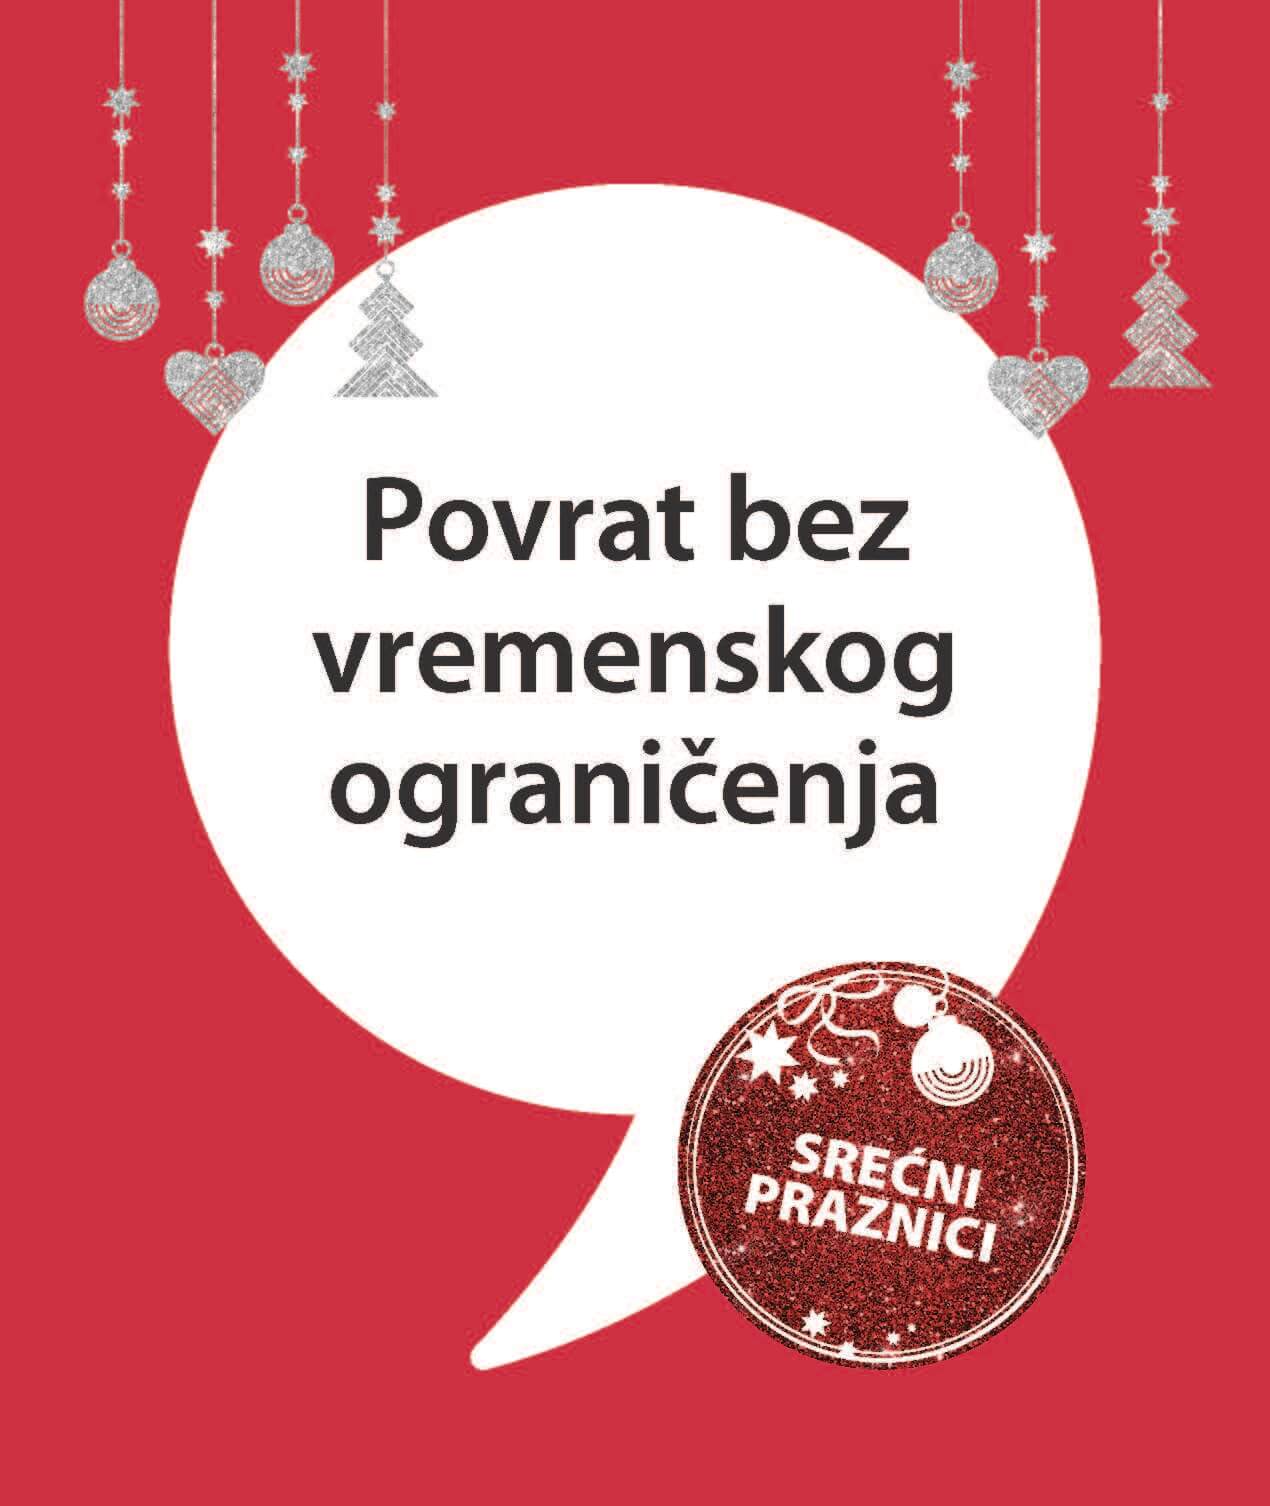 JYSK katalog DECEMBAR 2022 Srbija novogodisnje snizenje od 8.12. do 21.12.2022. Page 01